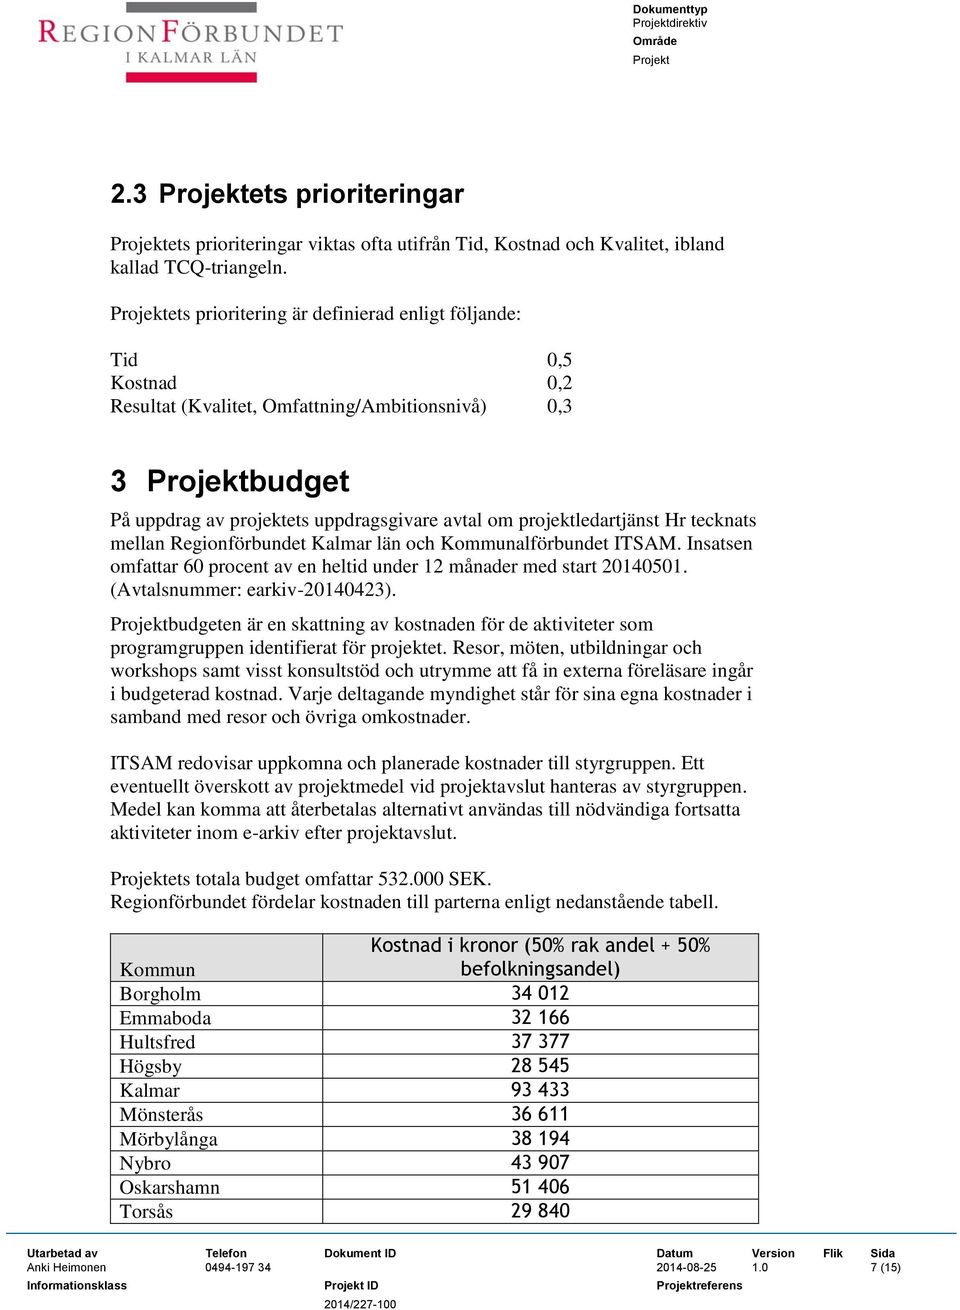 tecknats mellan Regionförbundet Kalmar län och Kommunalförbundet ITSAM. Insatsen omfattar 60 procent av en heltid under 12 månader med start 20140501. (Avtalsnummer: earkiv-20140423).